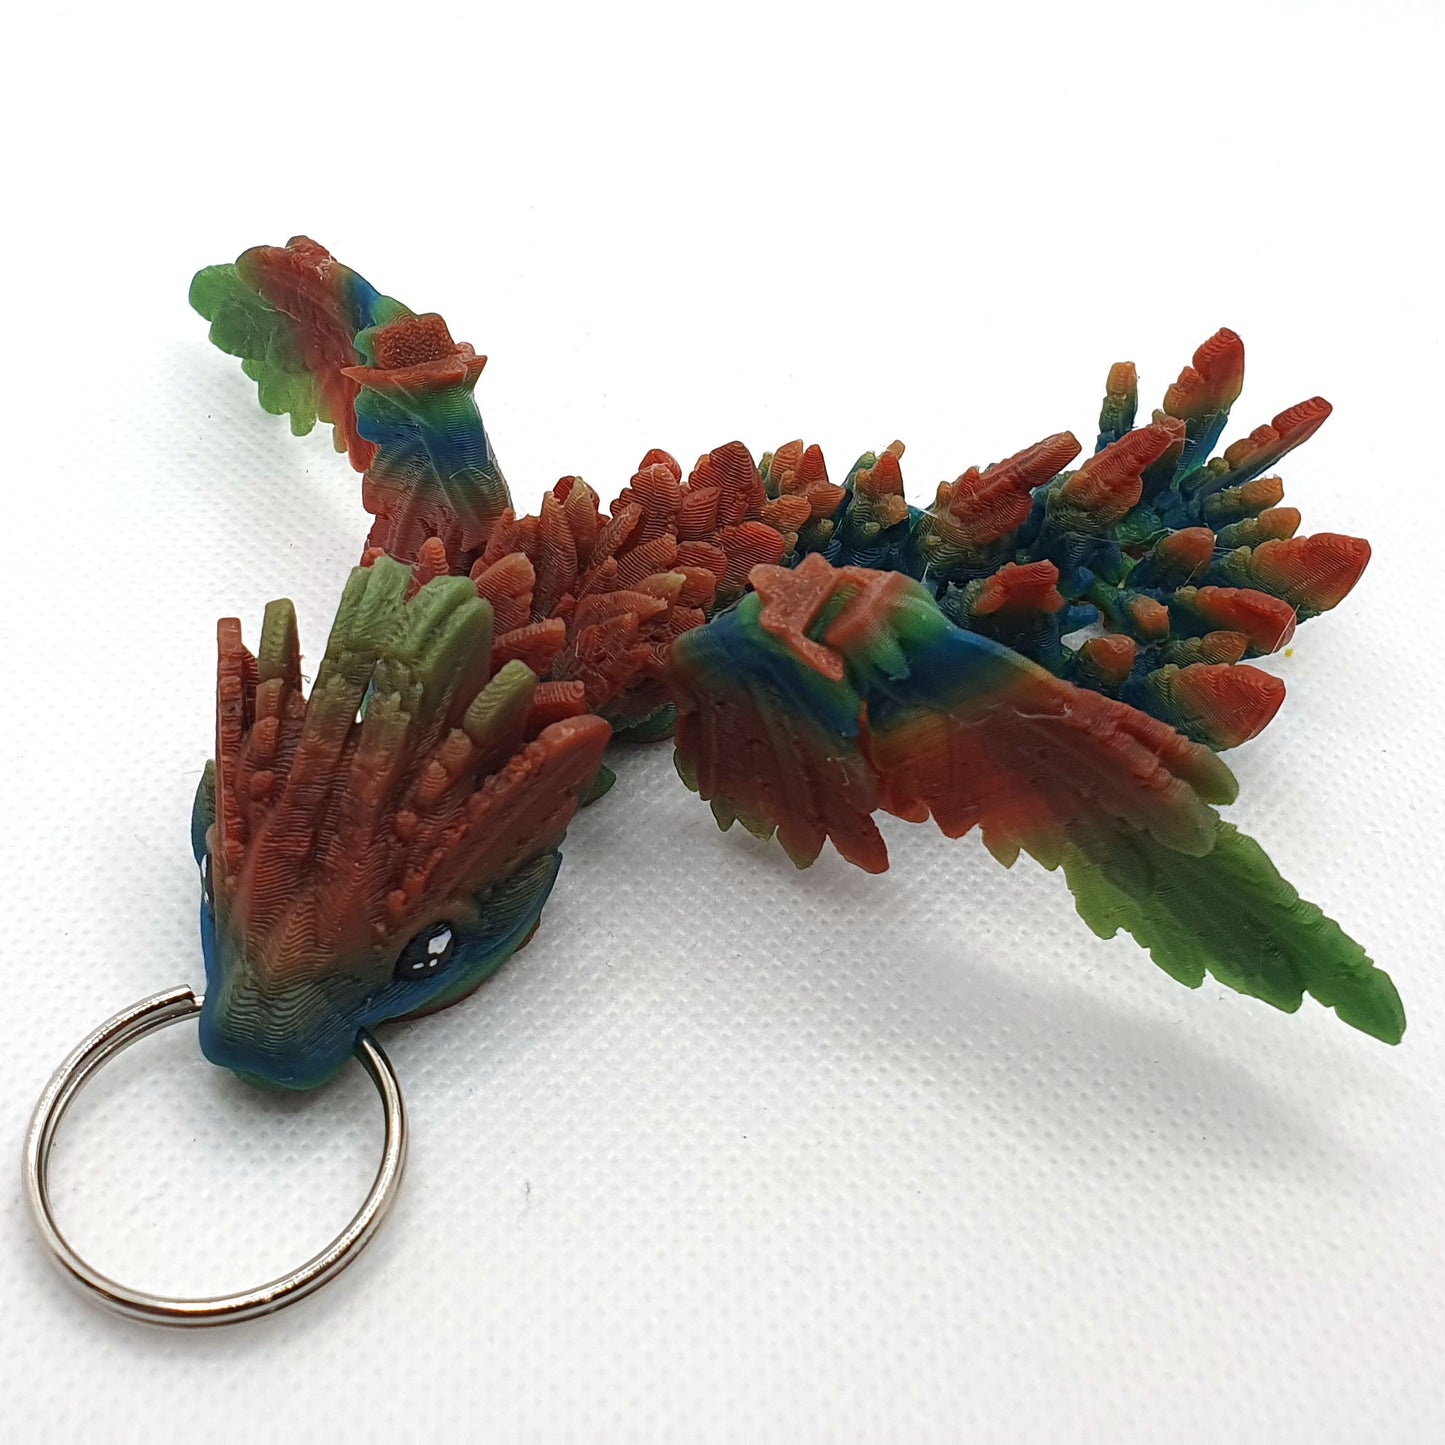 Flying Serpent Dragon Wyrmling Keychain Blind Bag